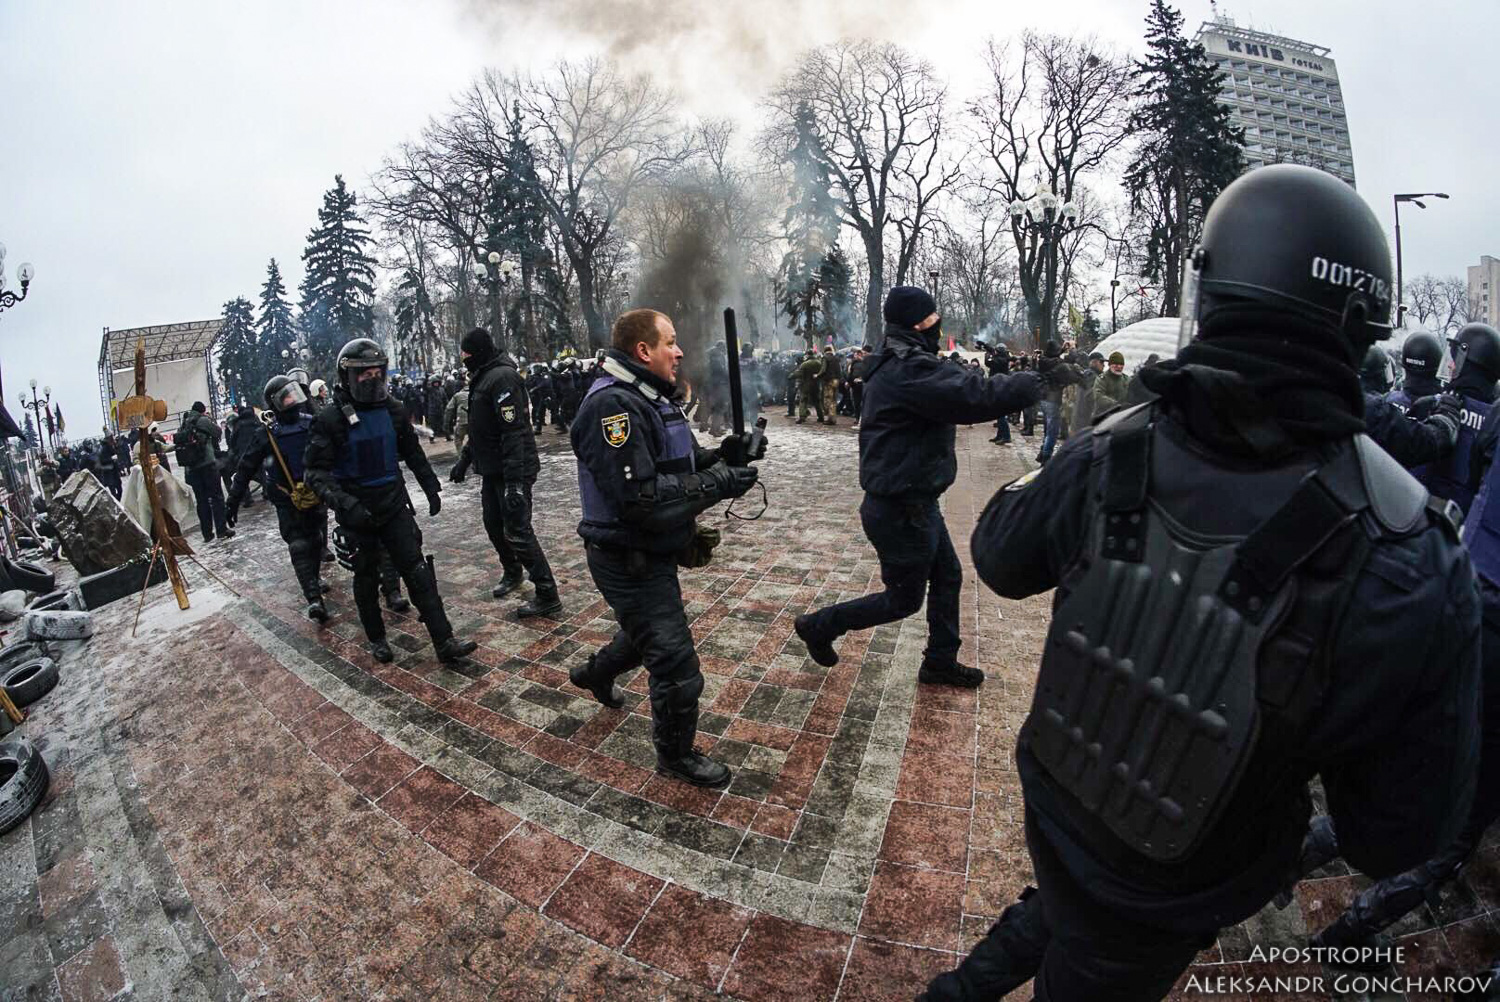 Ukraine - Ukraine News in brief. Tuesday 16 January. [Ukrainian sources] 0f26bce0d13d39dc2de710246ac7af38